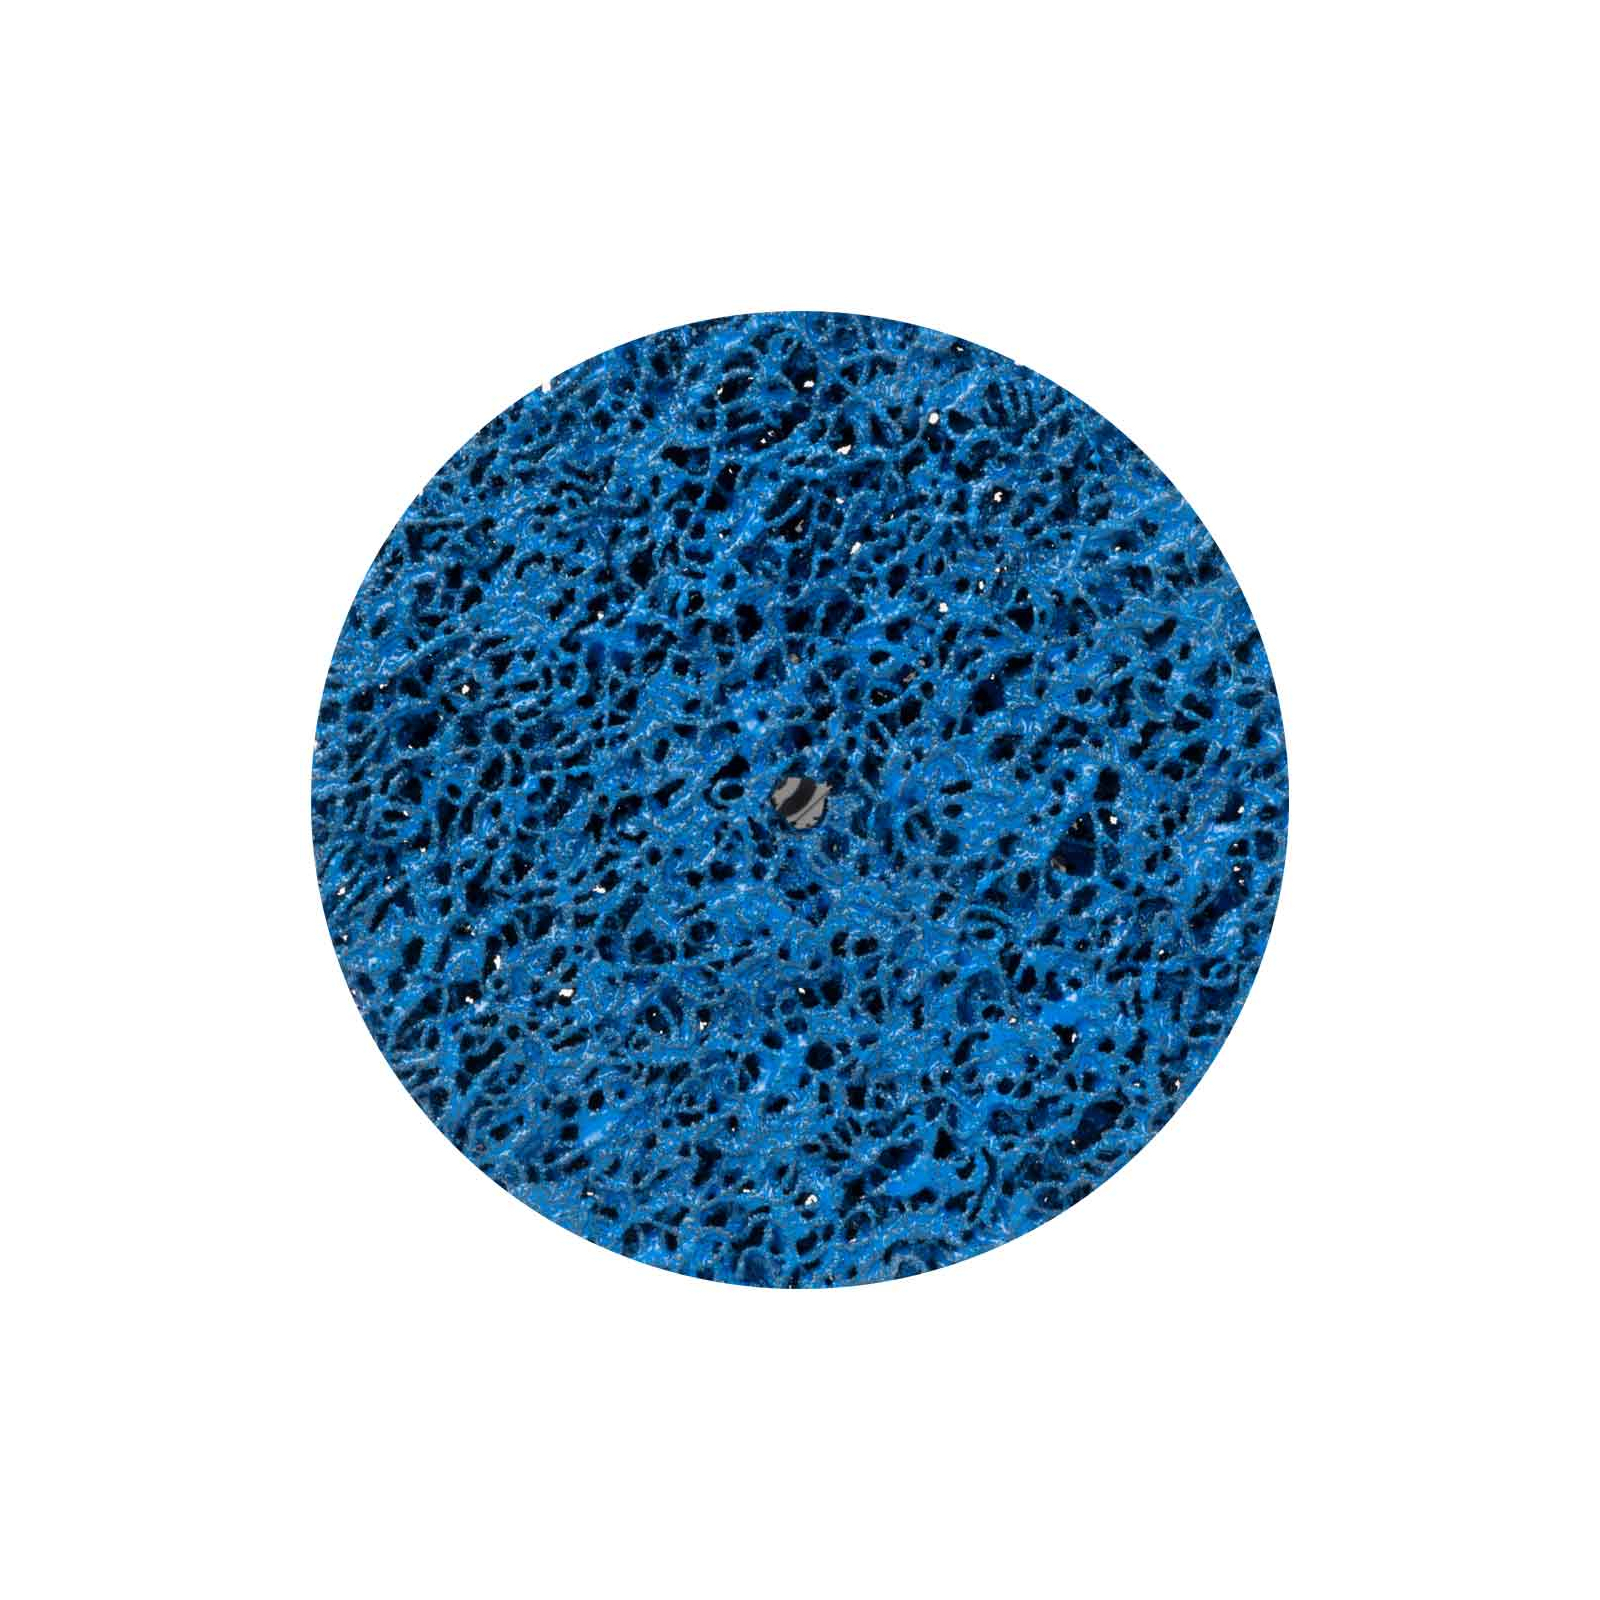 Круг зачистний Sigma з нетканого абразиву (корал) 125мм без тримача синій середня жорсткість (9175761)